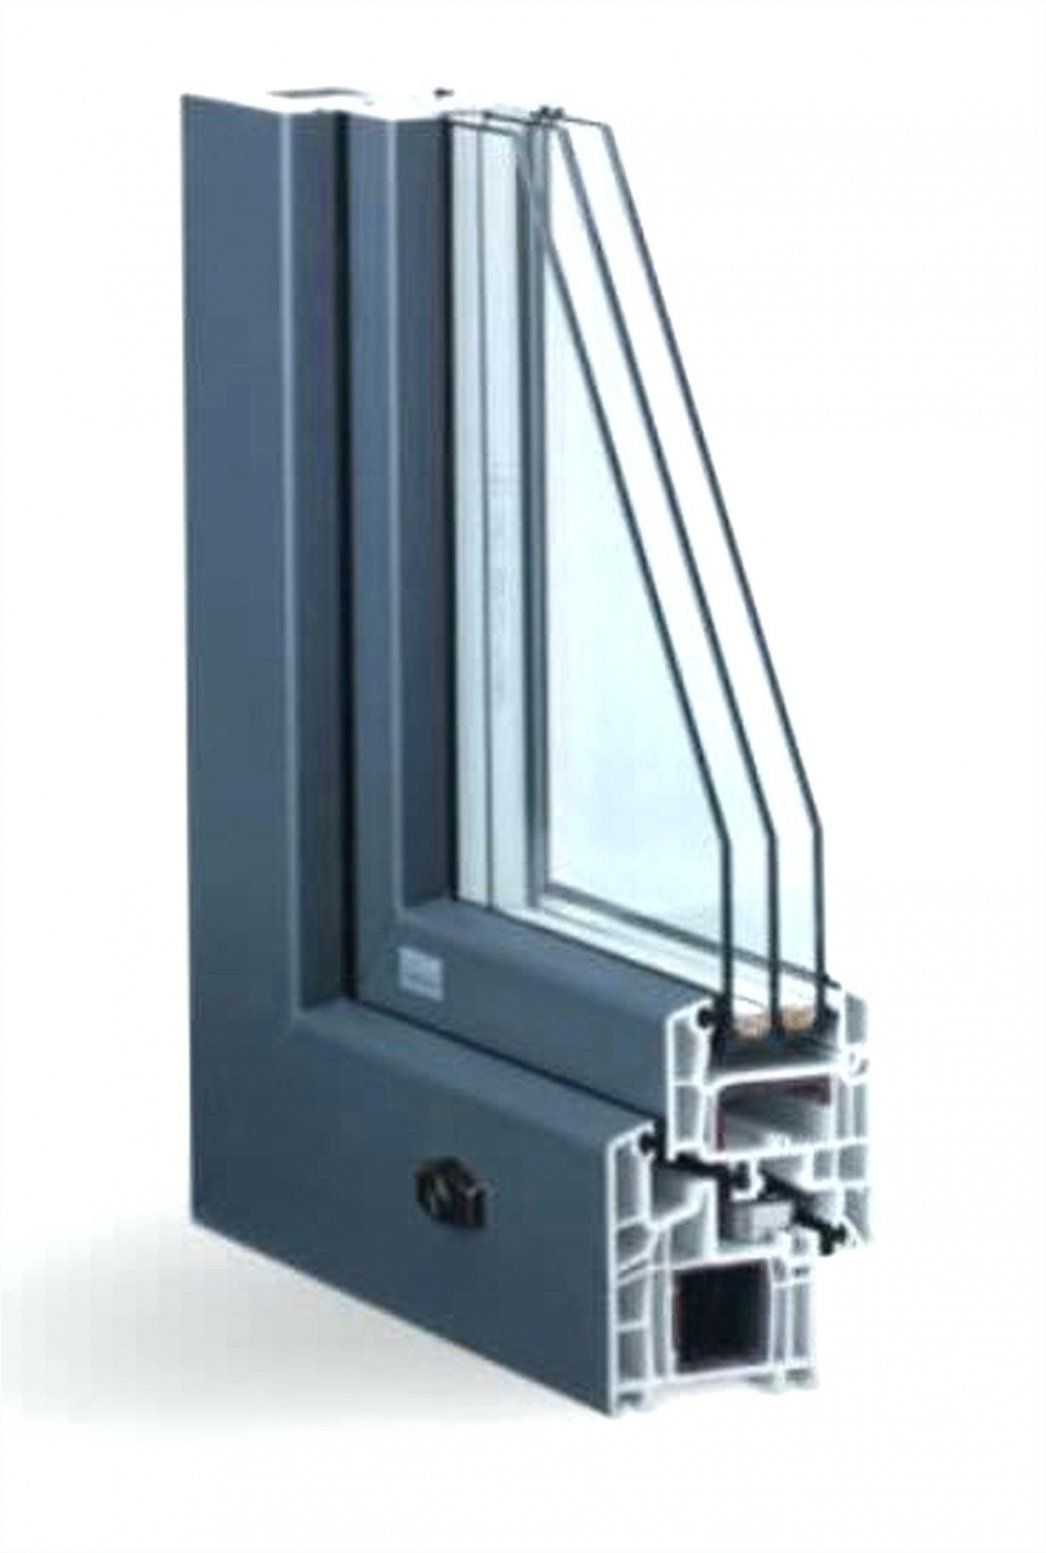 Fenster 3 Fach Verglasung – Furnacepark von 3 Fach Verglasung Kosten Bild